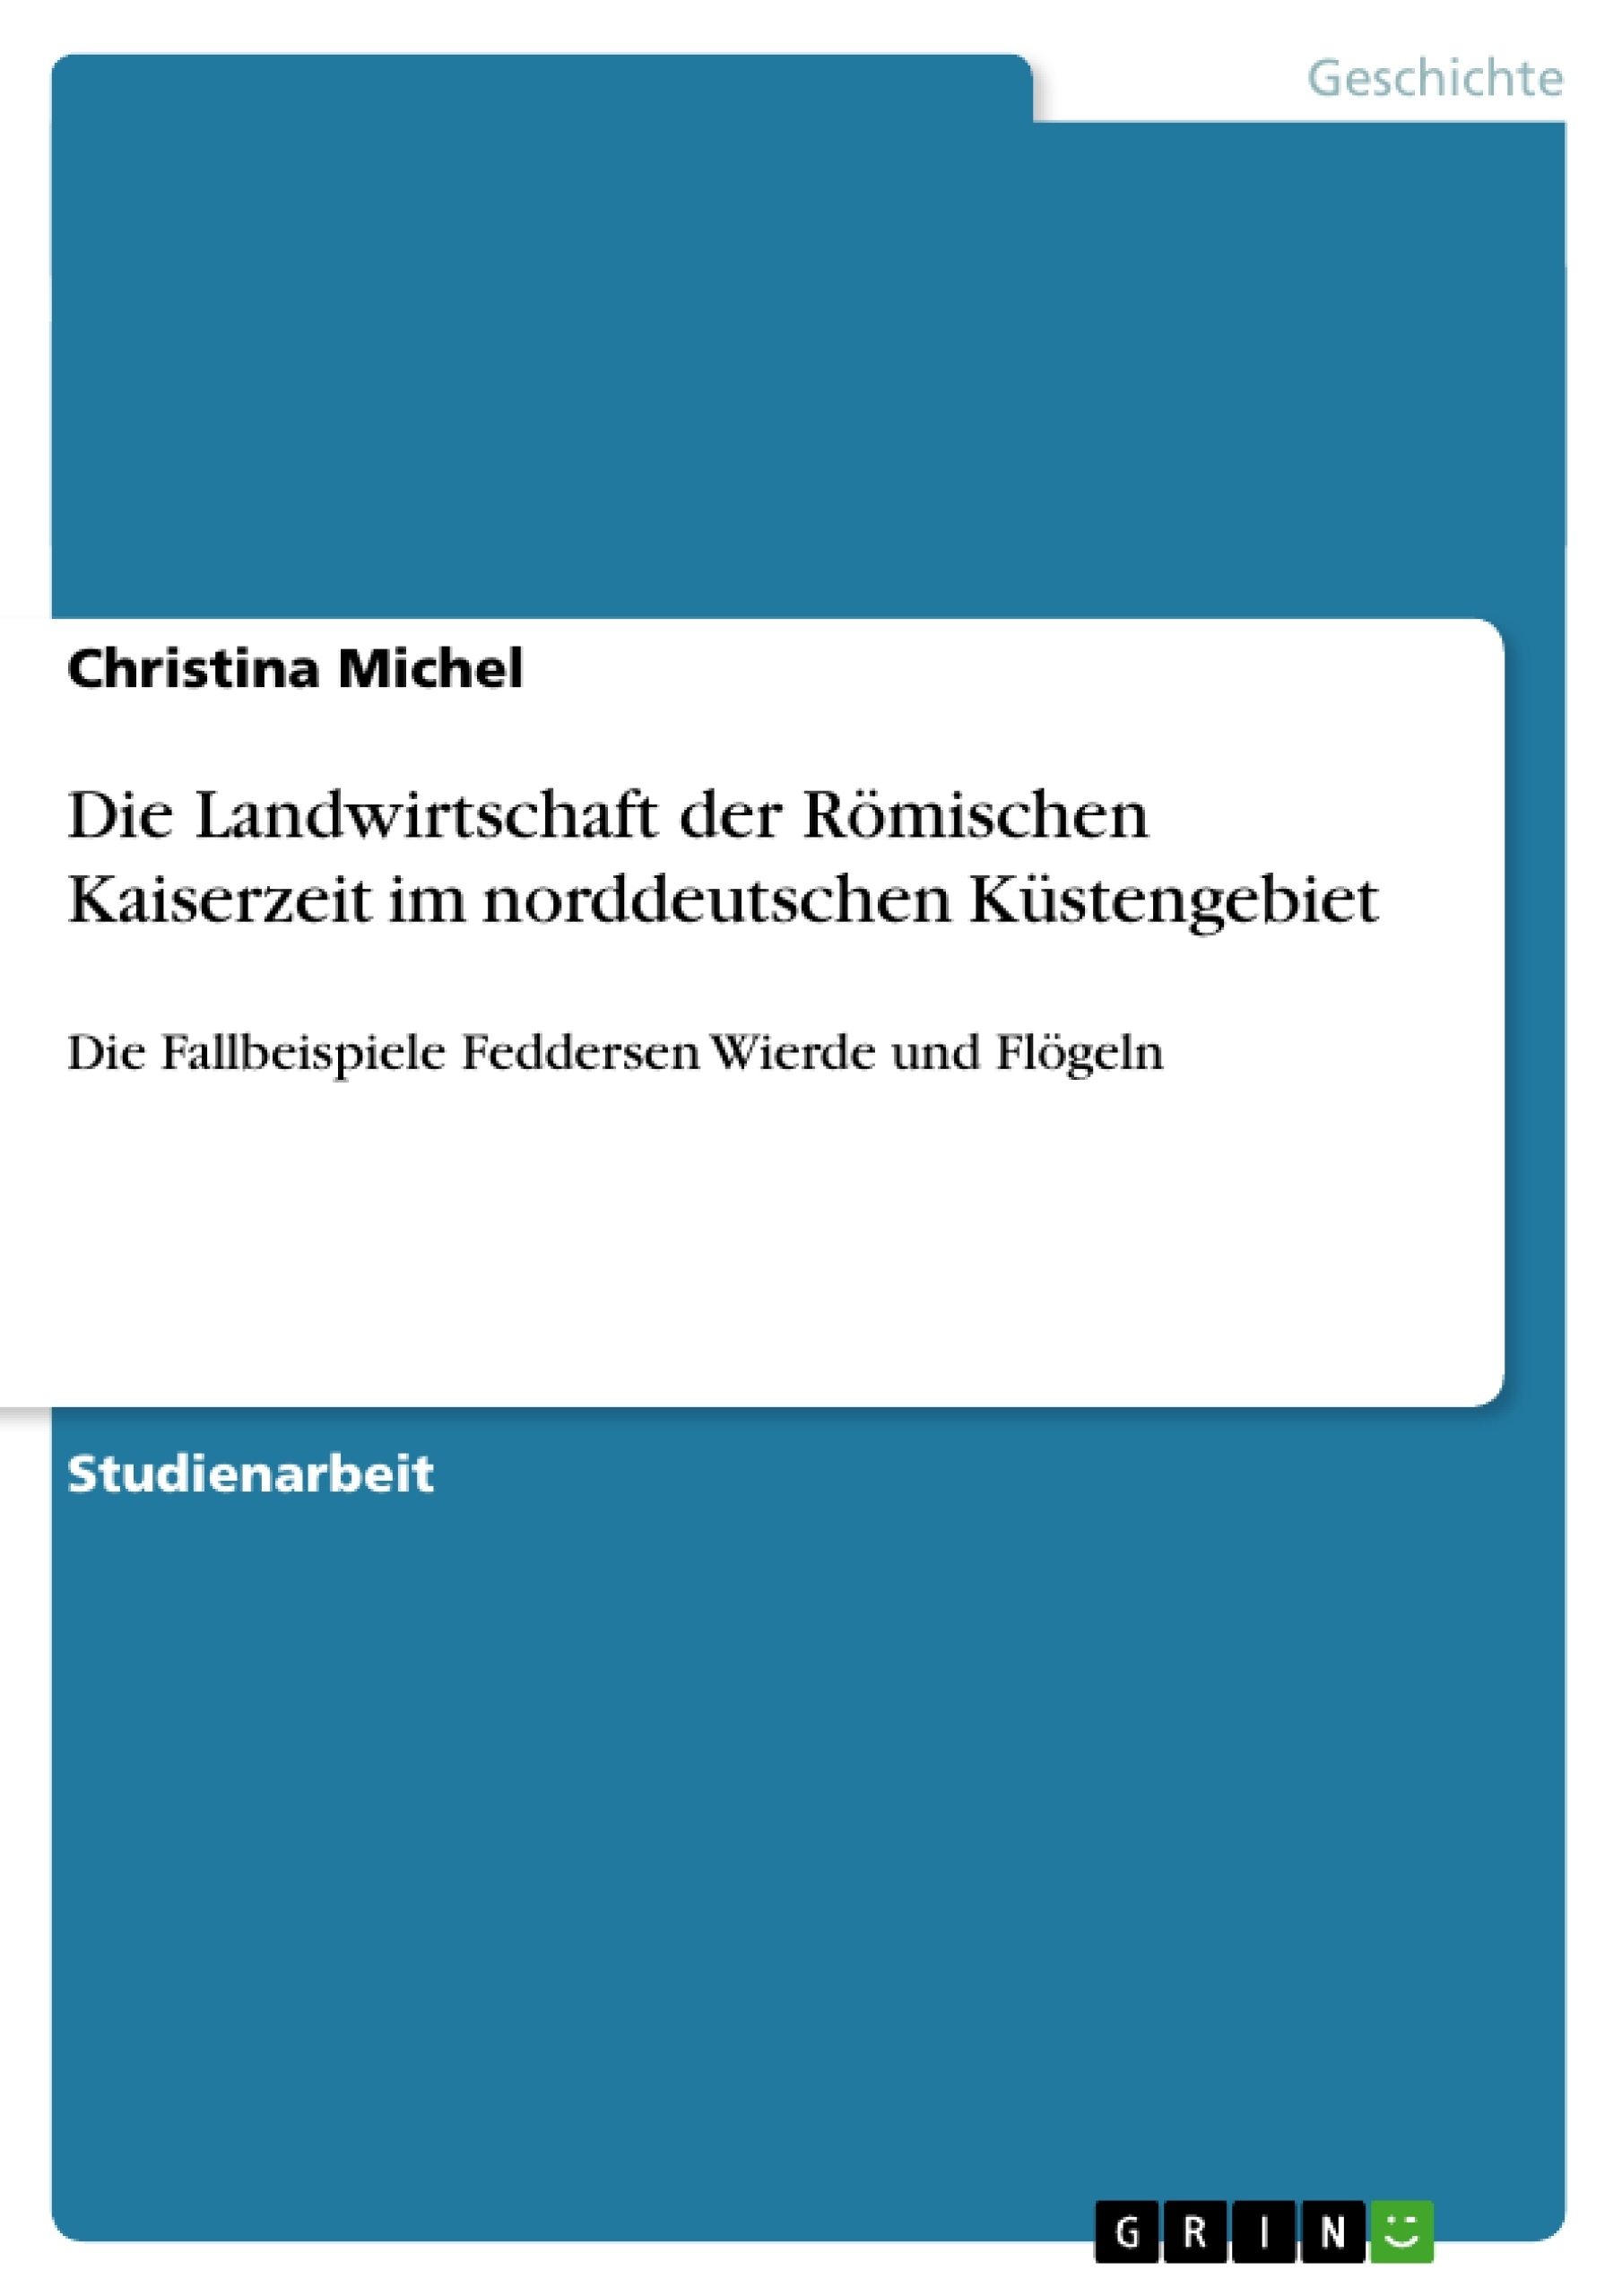 Title: Die Landwirtschaft der Römischen Kaiserzeit im norddeutschen Küstengebiet